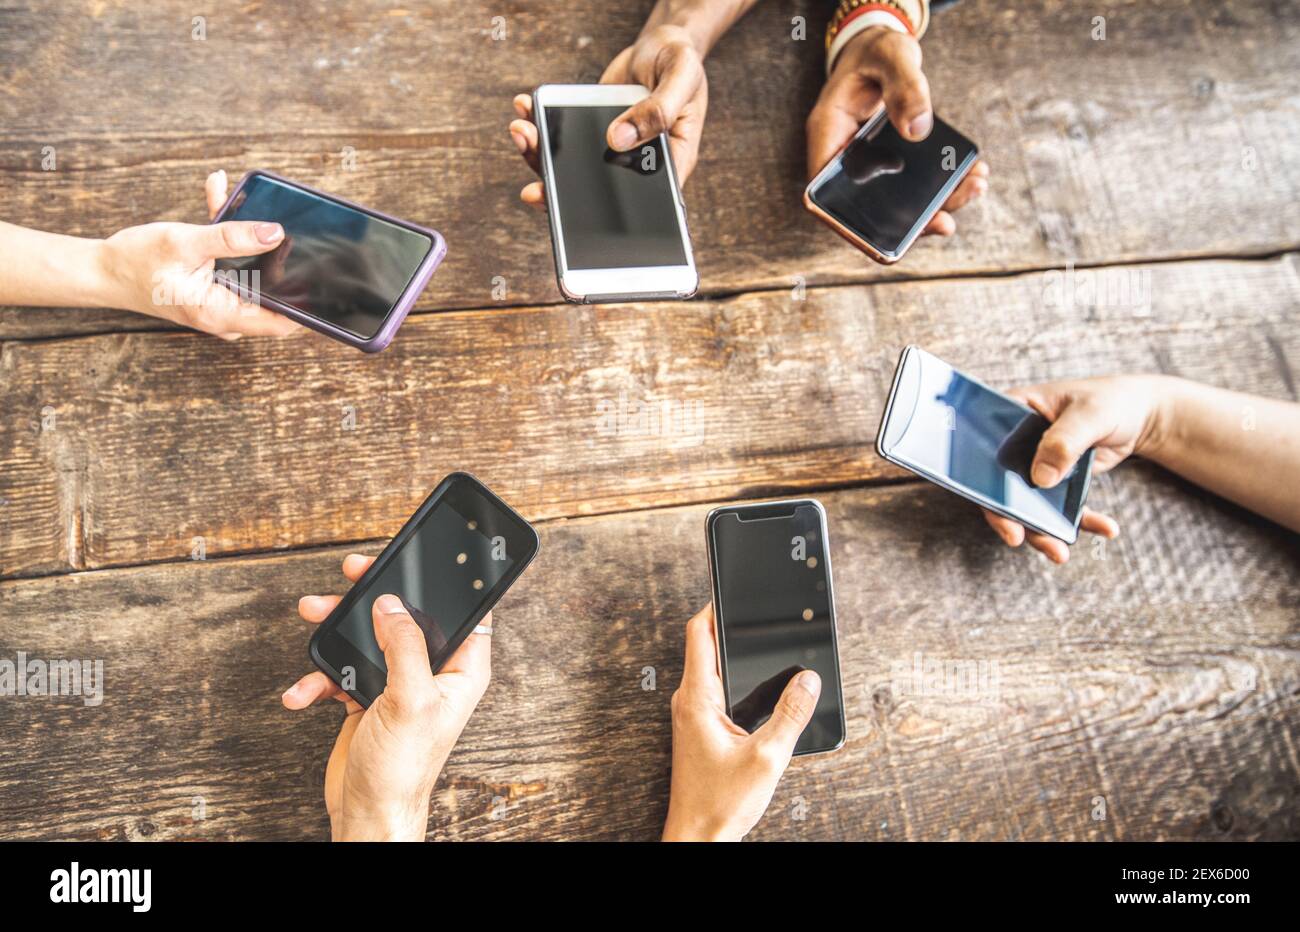 Collègue utilisant un smartphone mobile sur fond de bois - Gros plan sur les mains de personnes partageant du contenu sur les réseaux sociaux avec smartphone Banque D'Images